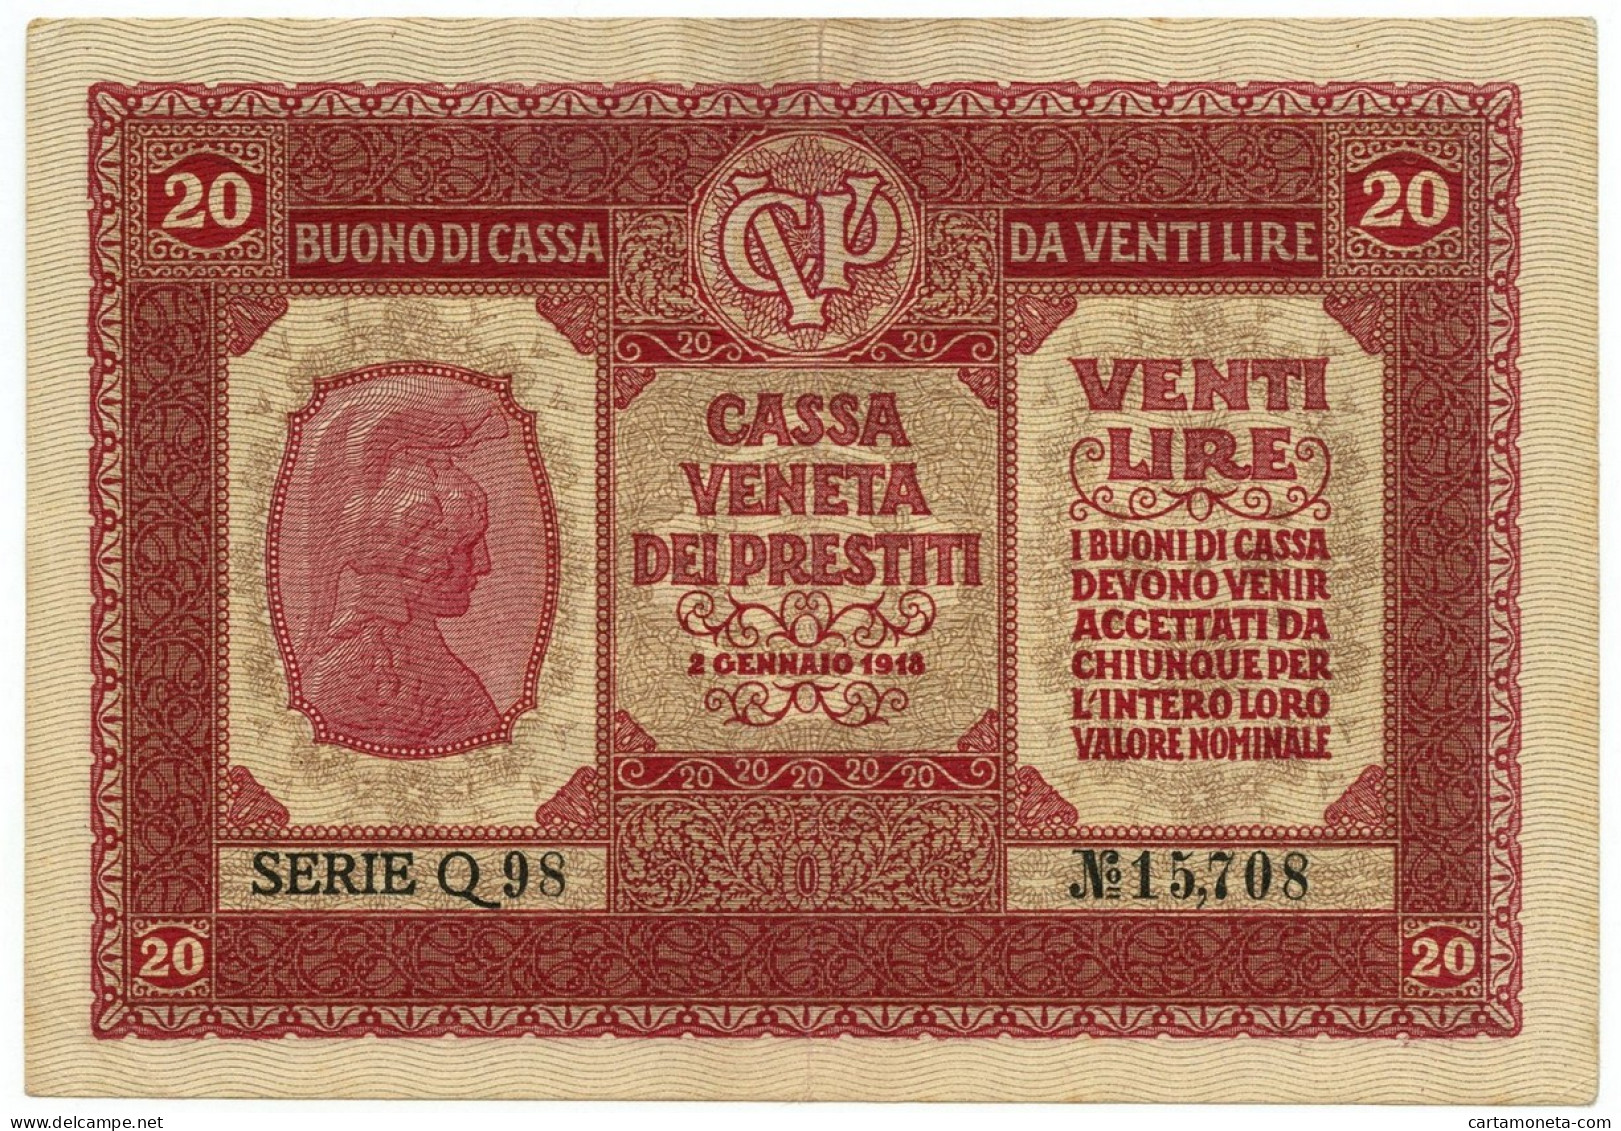 20 LIRE CASSA VENETA DEI PRESTITI OCCUPAZIONE AUSTRIACA 02/01/1918 BB/SPL - Austrian Occupation Of Venezia